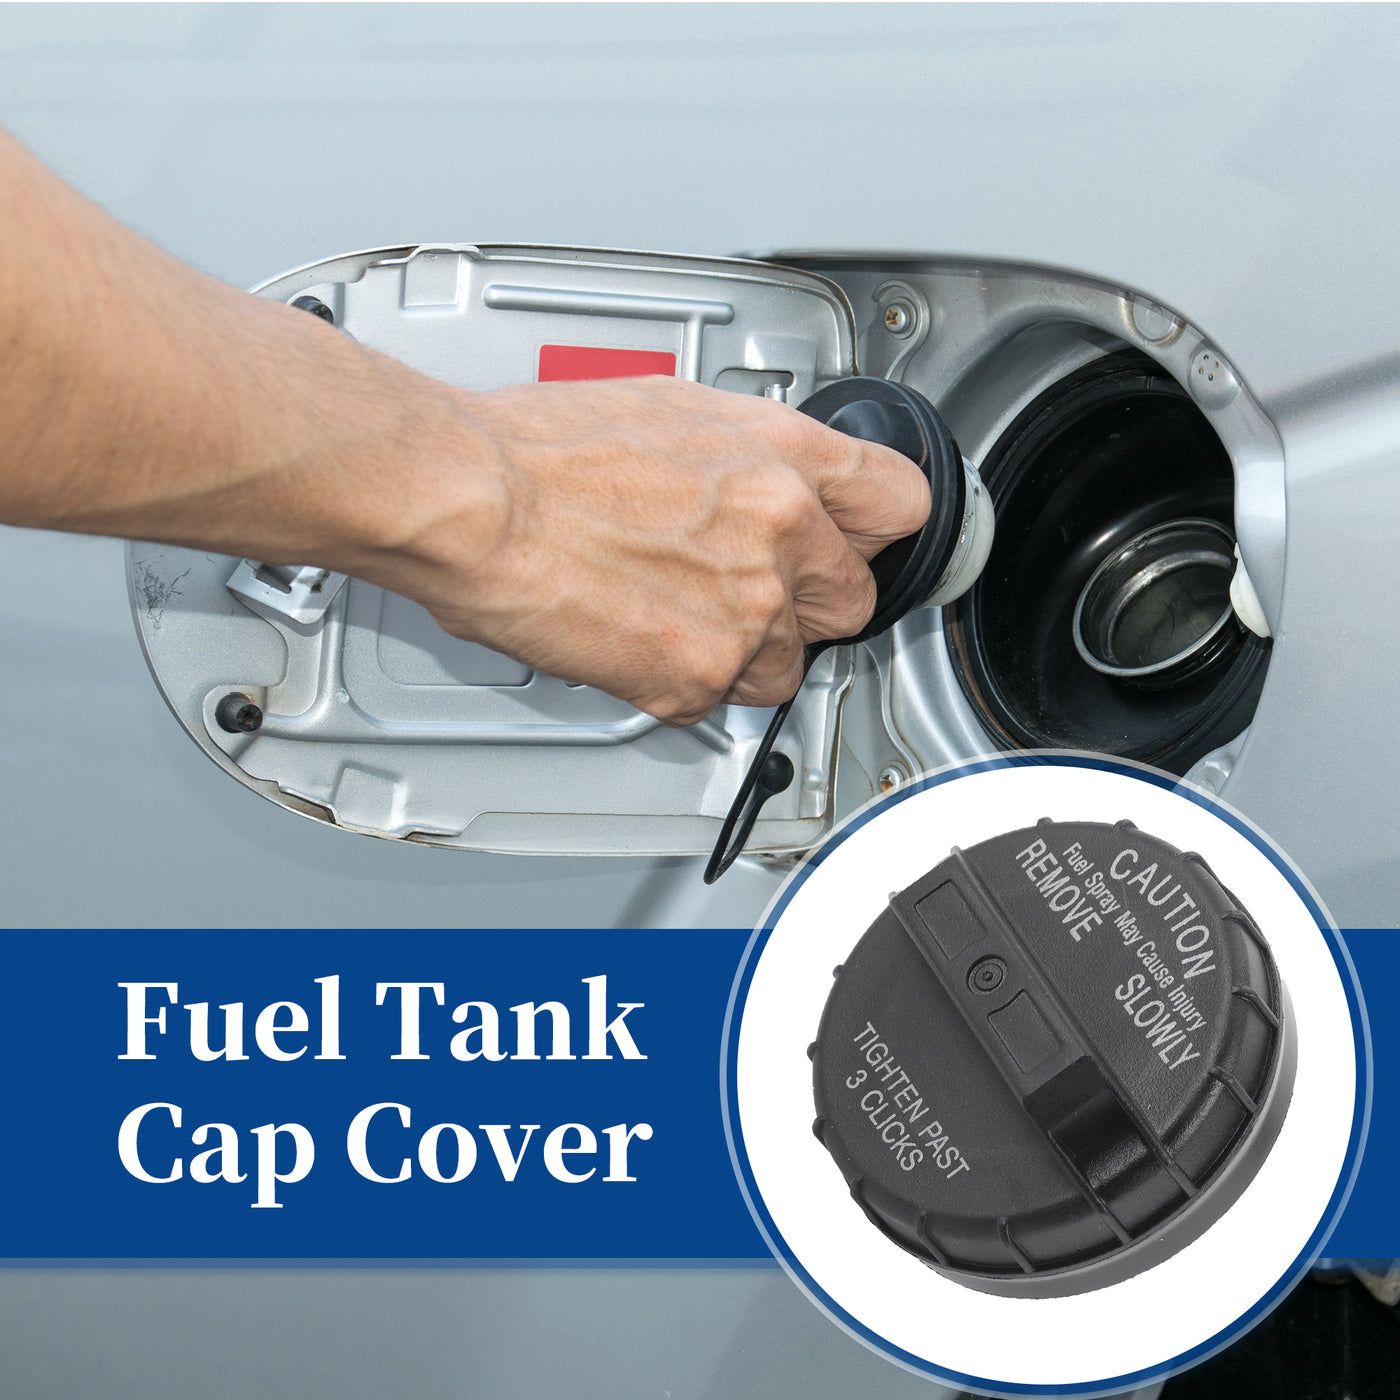 ACROPIX Plastic Gas Fuel Cap Fuel Tank Cap Black Fit for Dodge Caravan Durango Grand No.52102464AA/52102464AB - Pack of 1